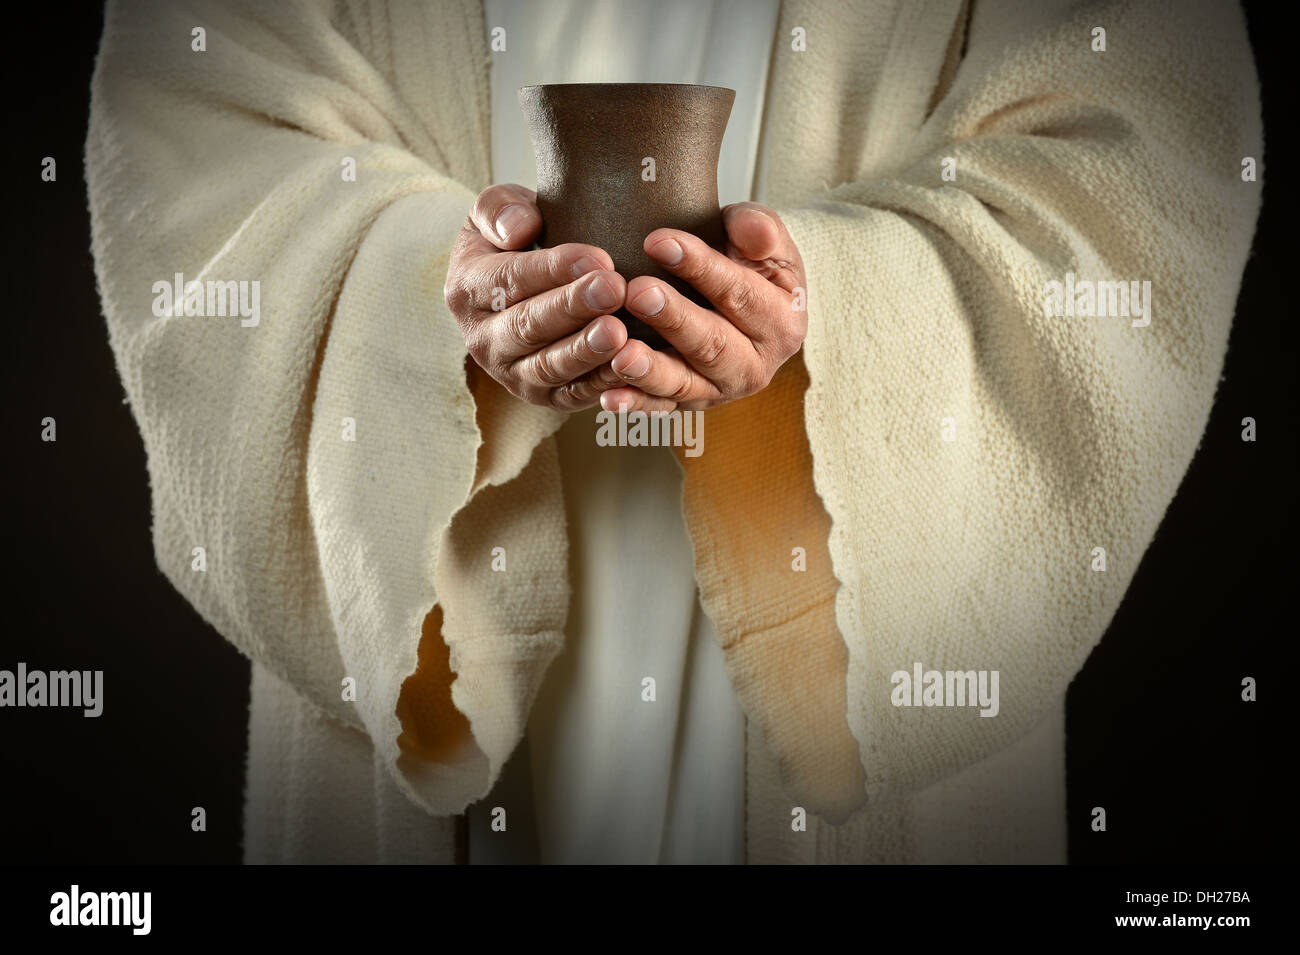 Le mani di Gesù tenendo la coppa di vino, simbolo di comunione Foto Stock